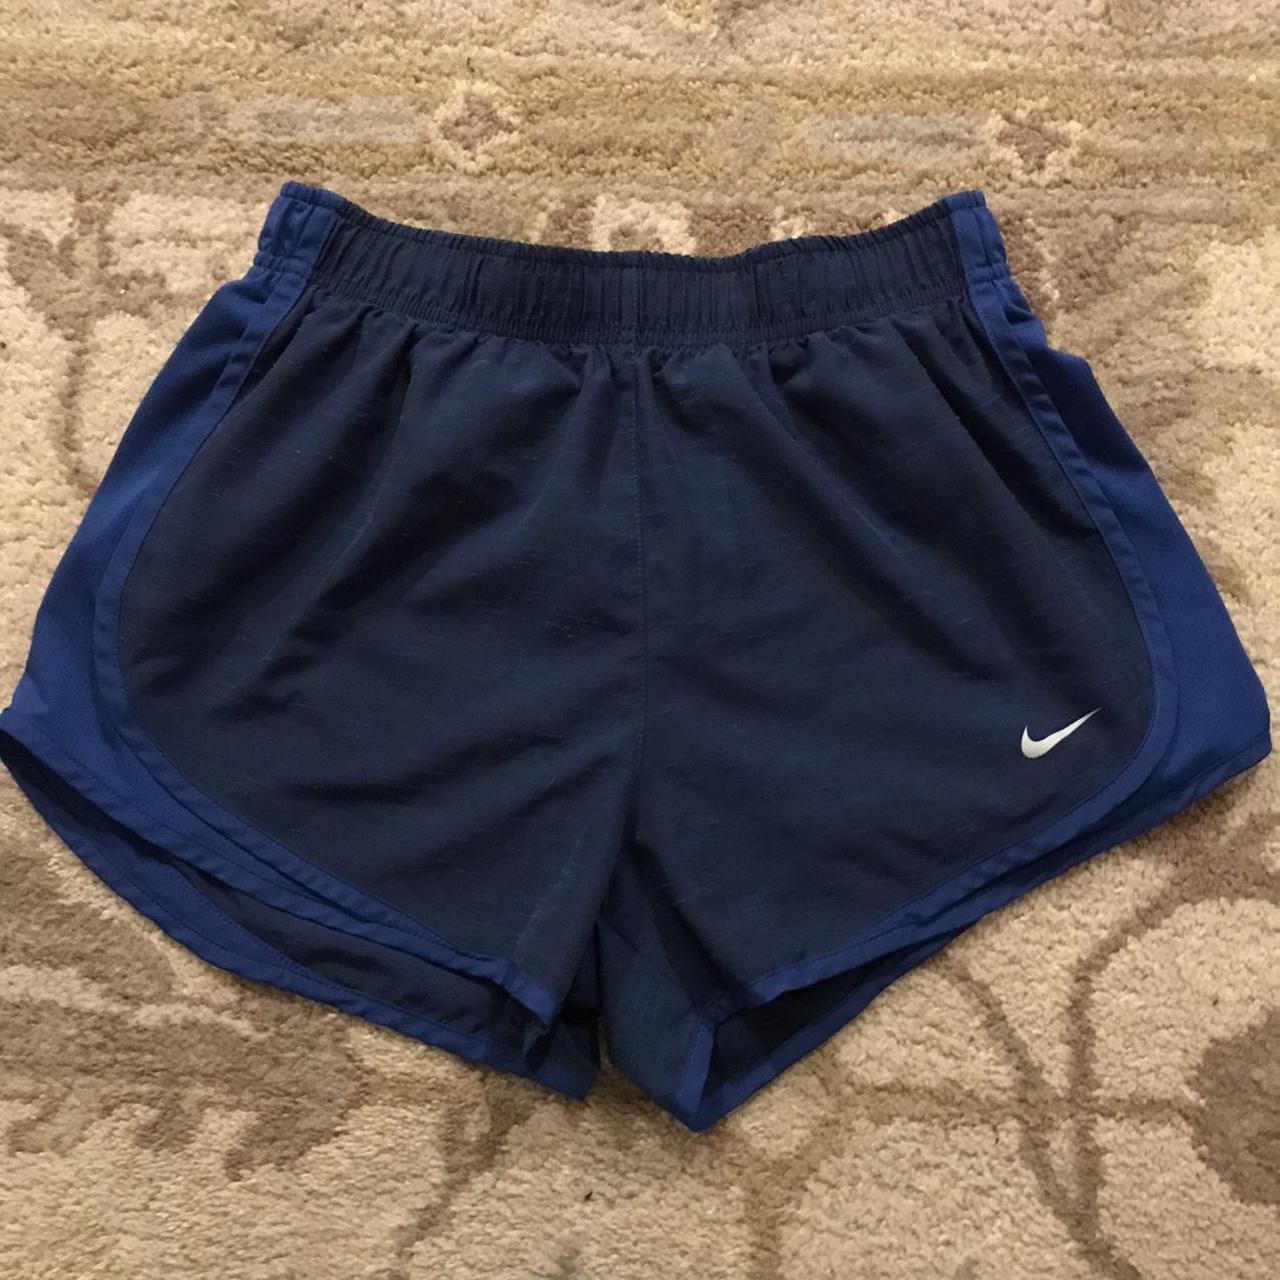 Product Image 1 - Nike Dri-Fit Exercise Short Shorts
Brand